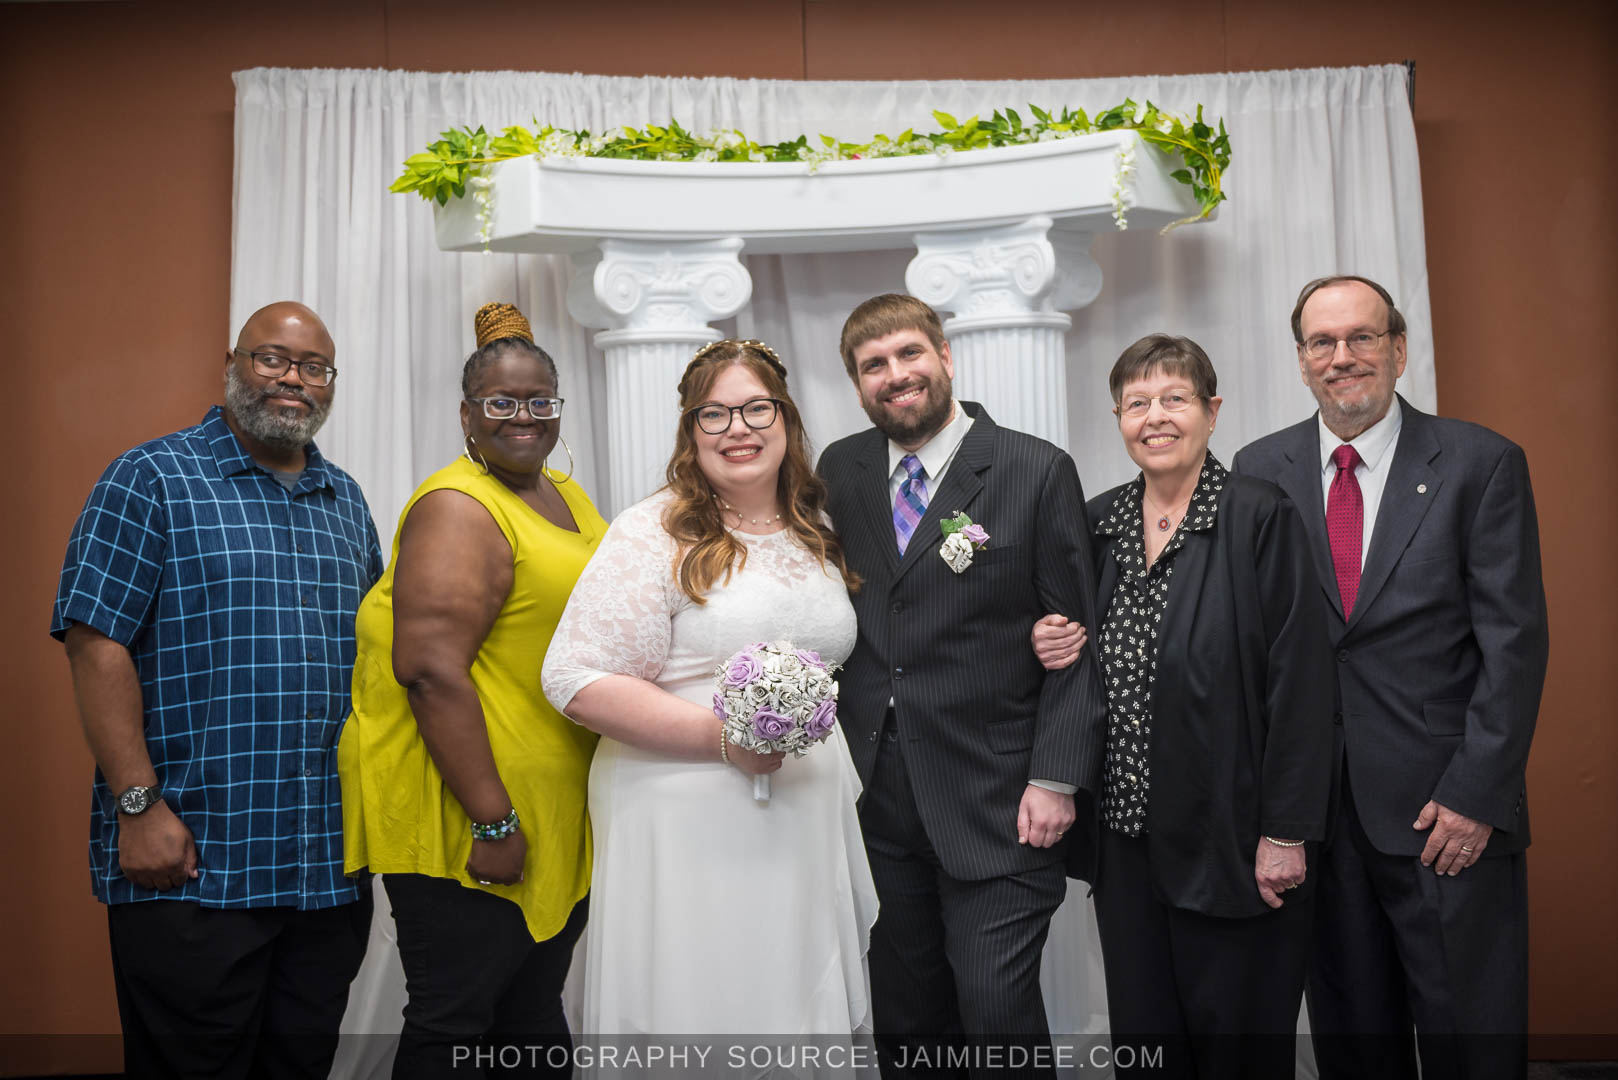 Atlanta City Hall Wedding with guests